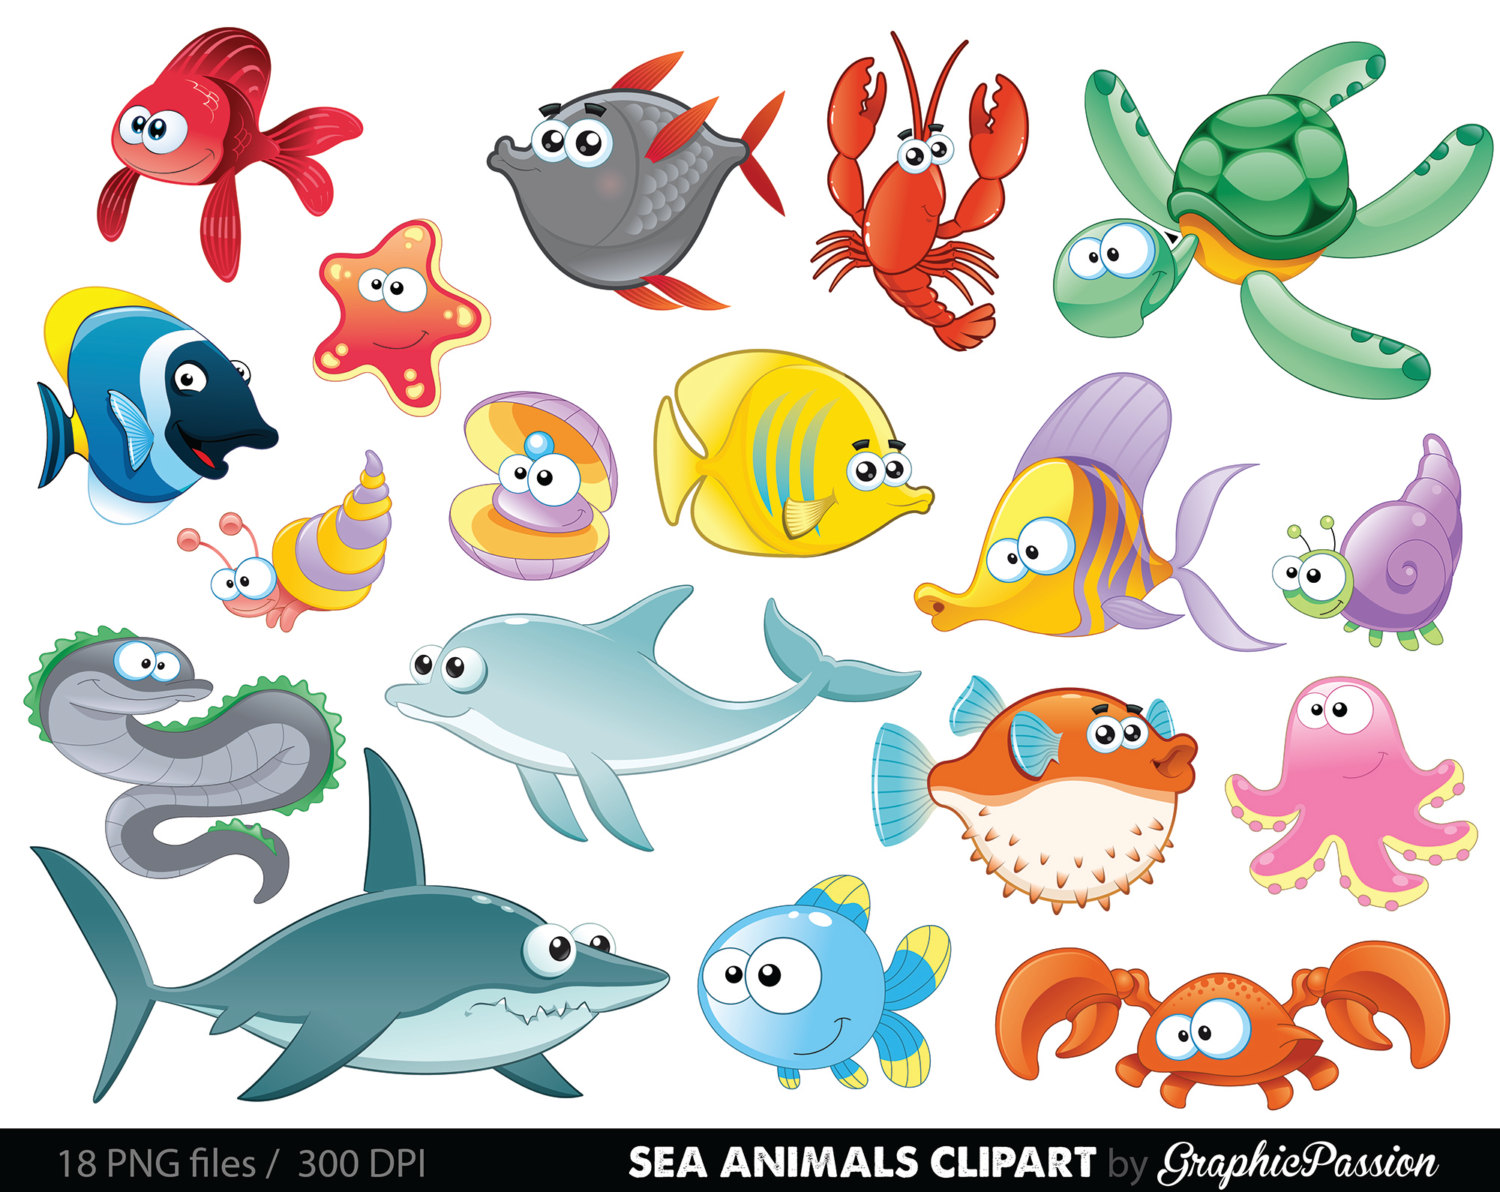 Sea creatures clipart.